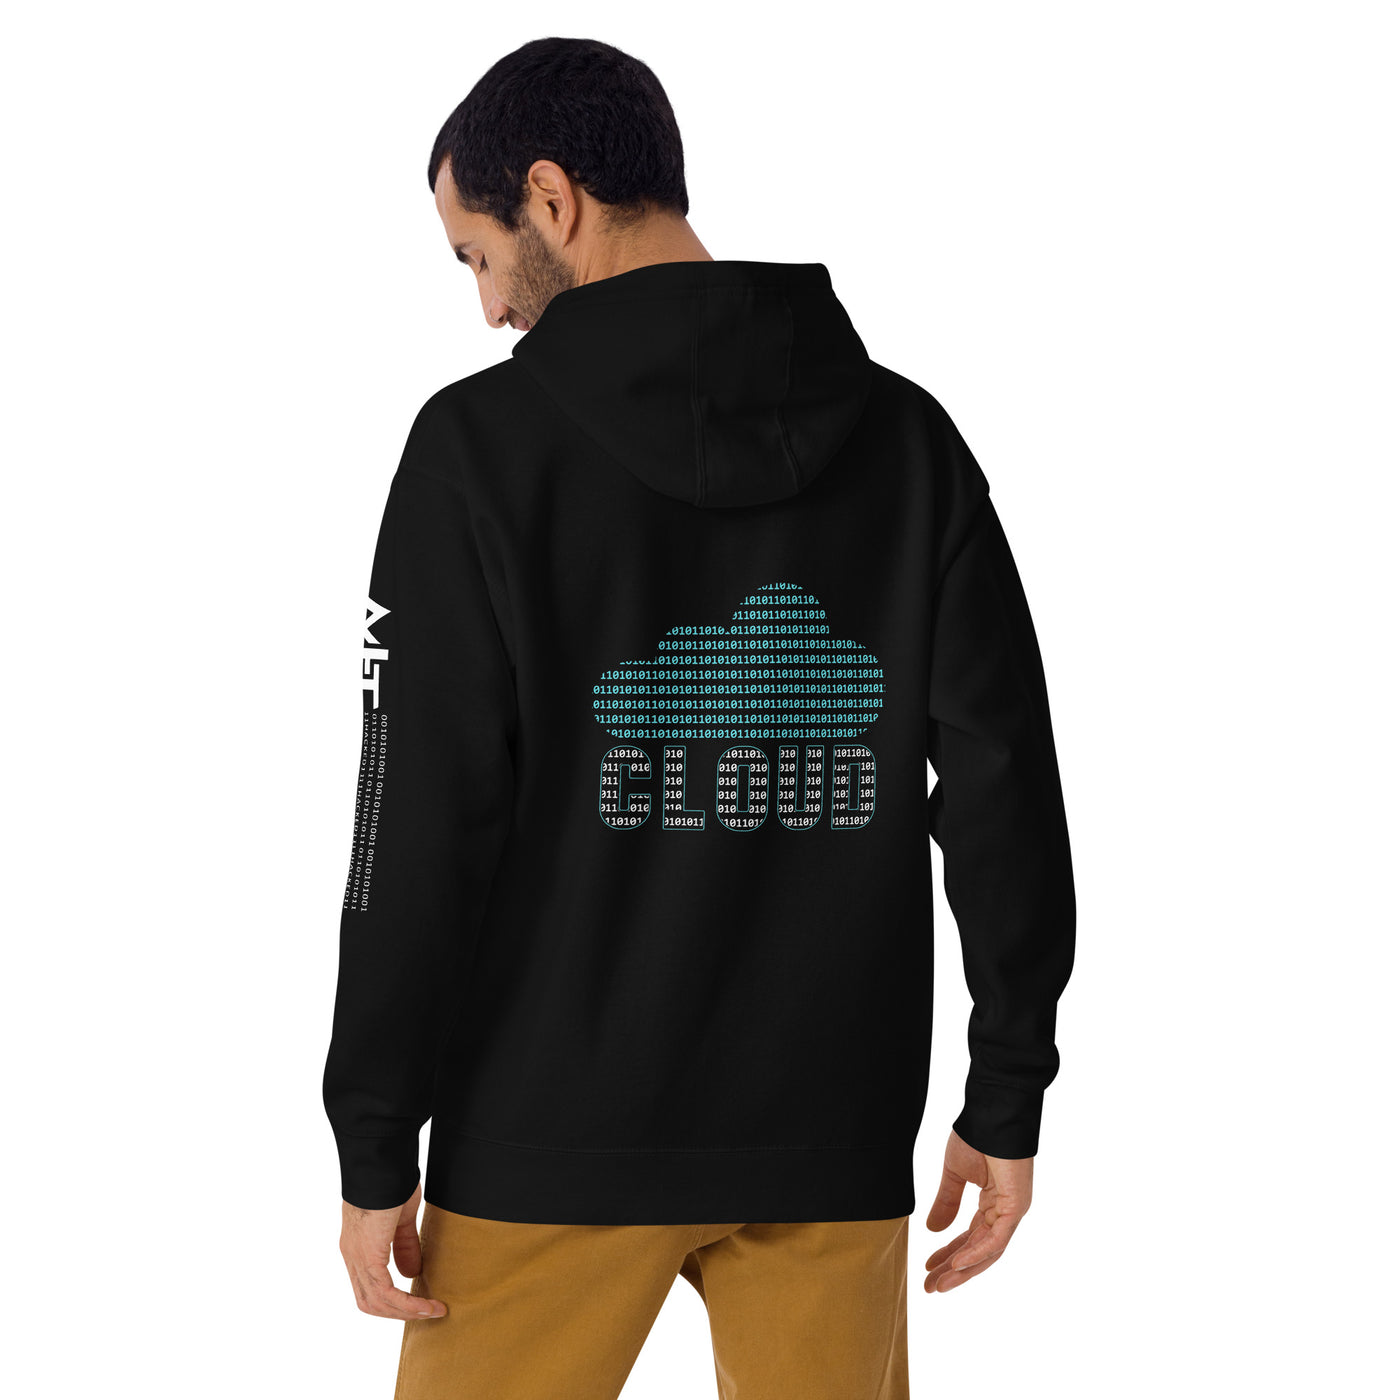 Digital Cloud - Unisex Hoodie ( Back Print )